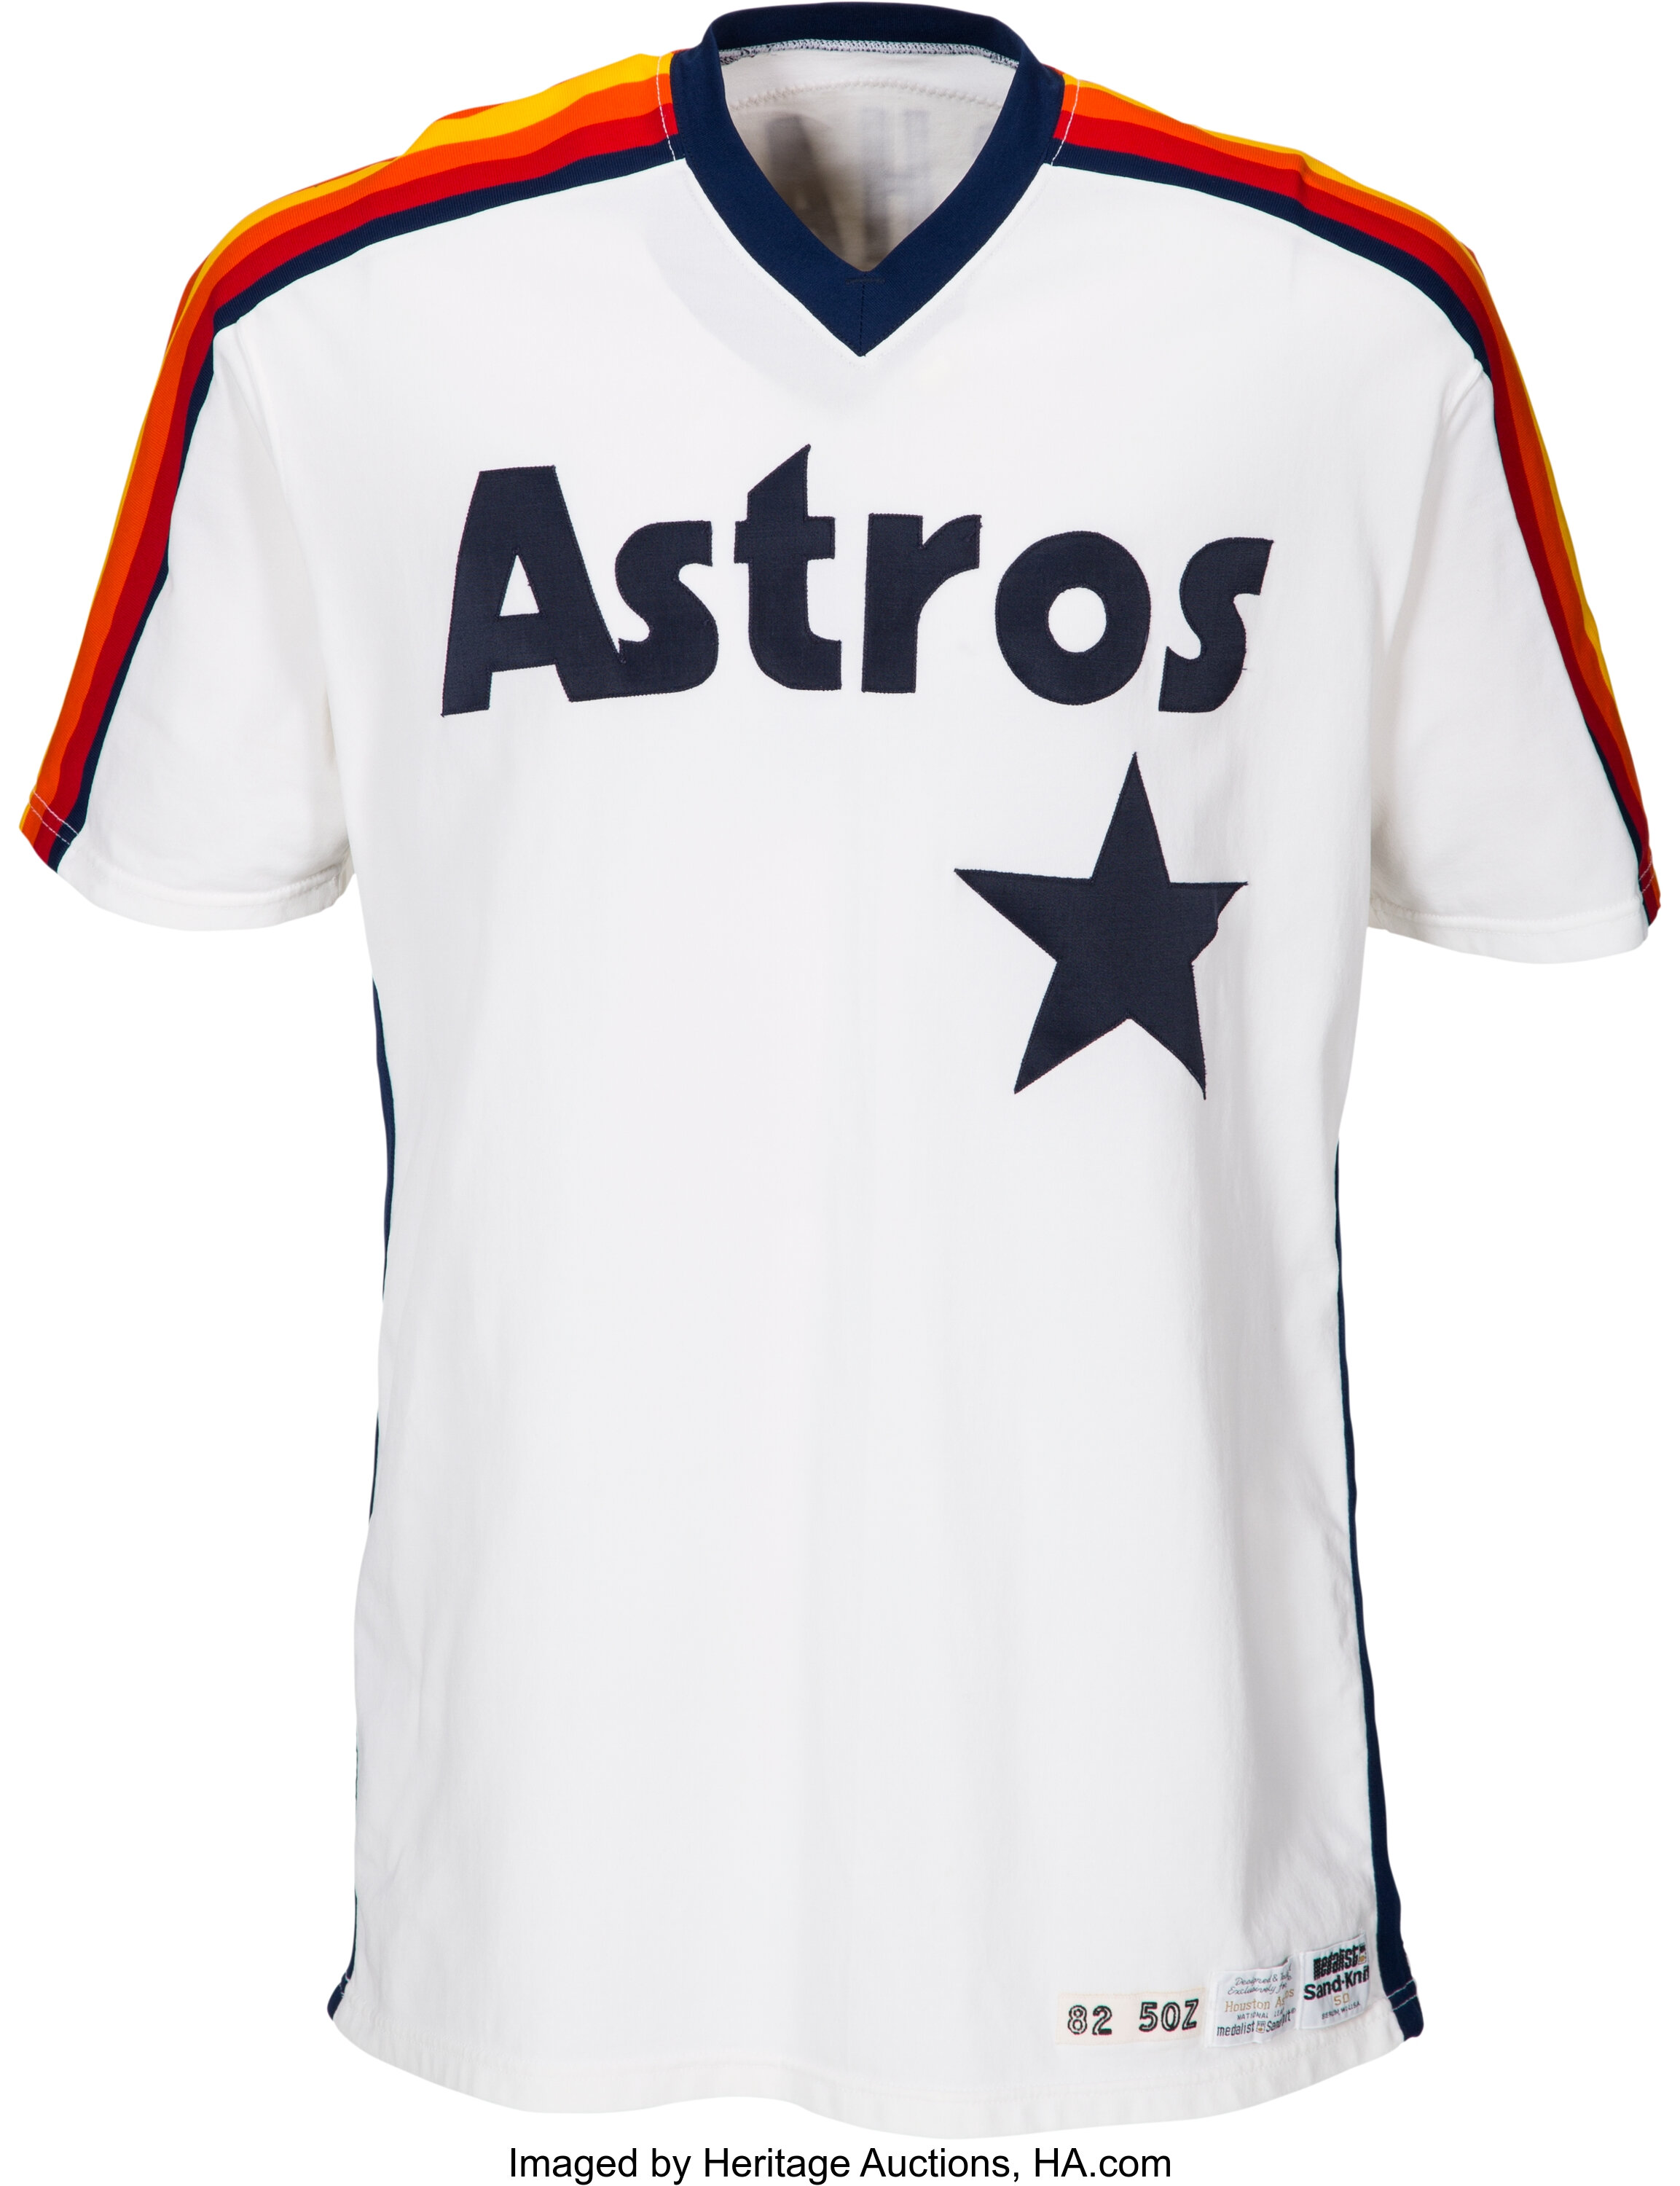 Richard reviews the Houston Astros' new logo, uniforms